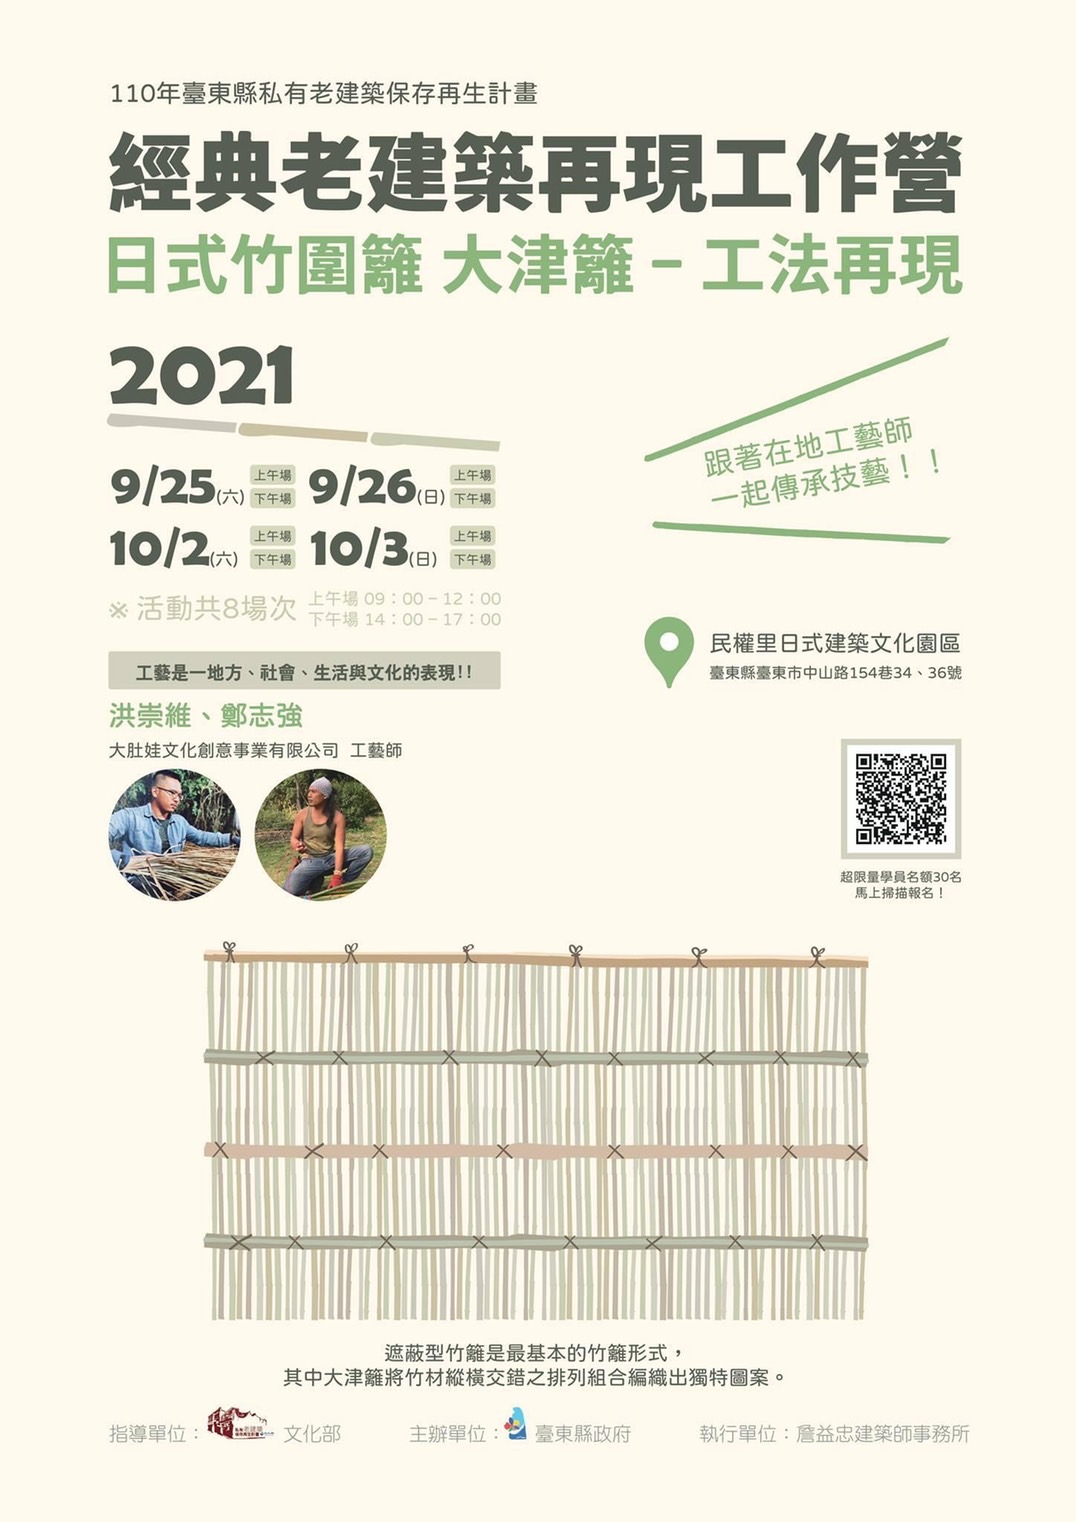 【工作坊】110經典建築再現－日式竹籬工作坊